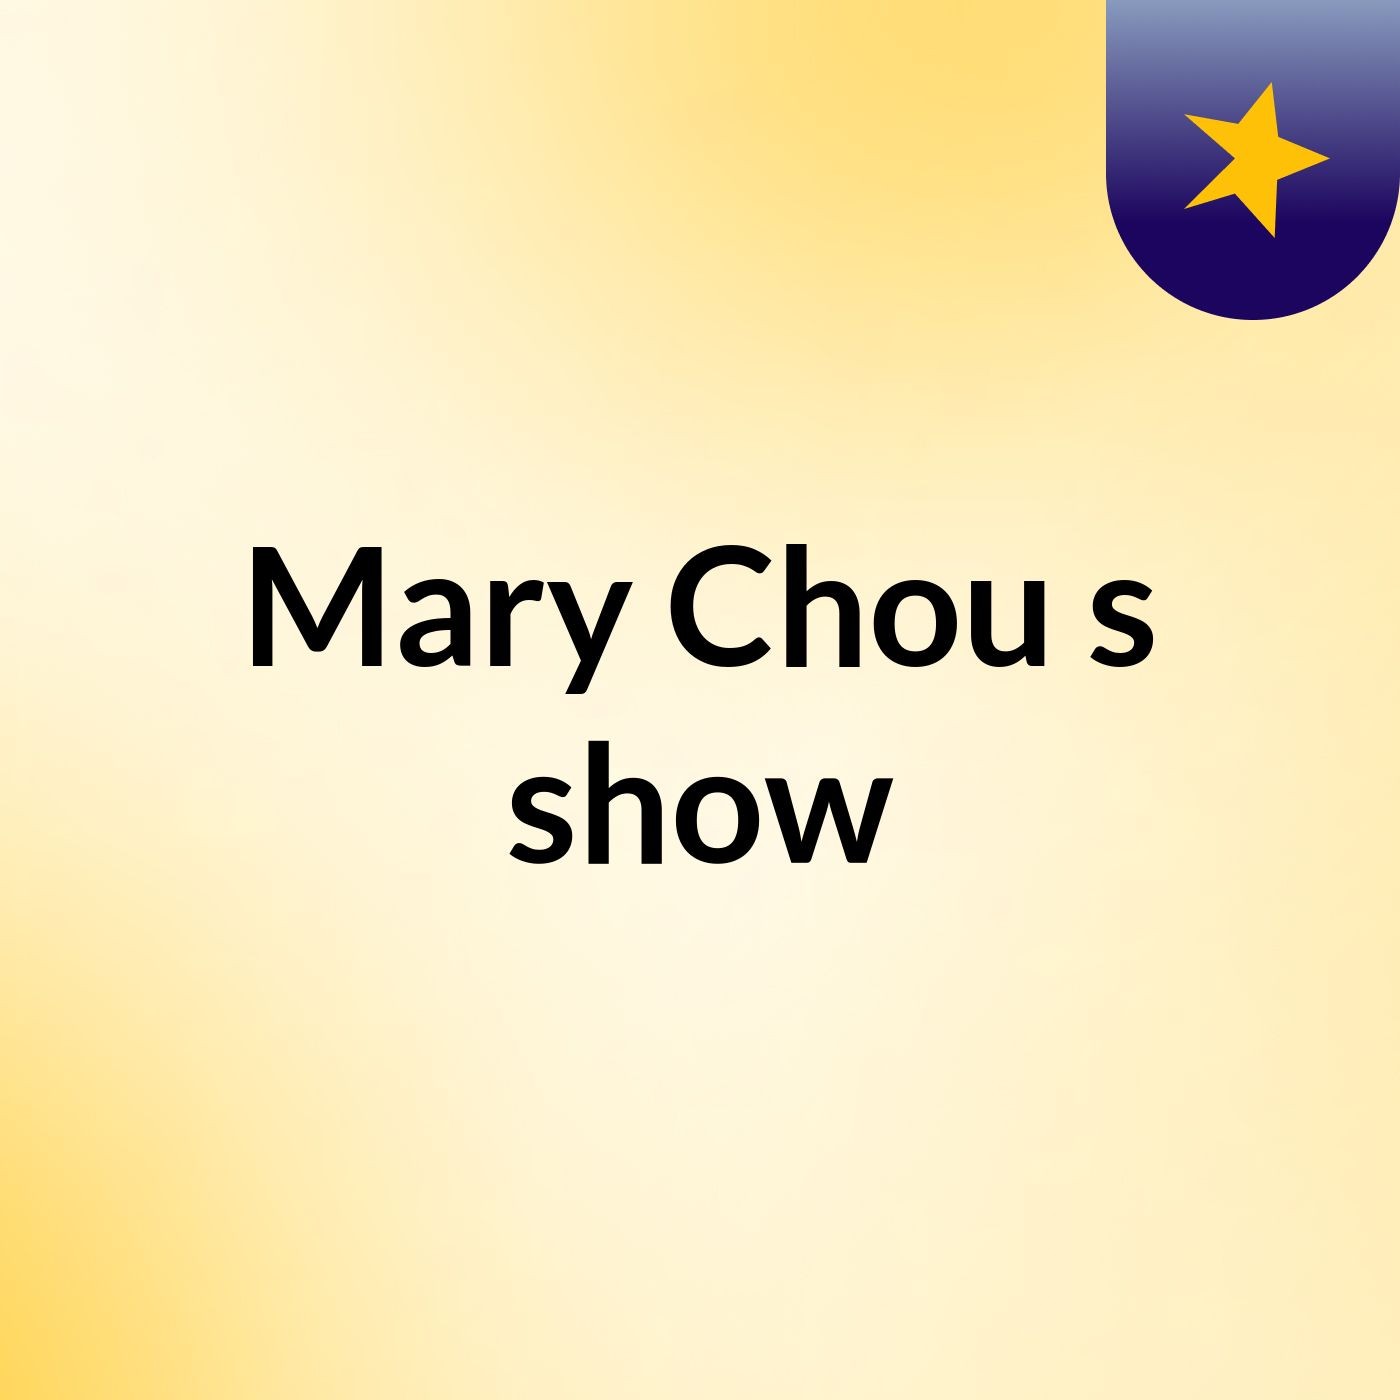 Mary Chou's show